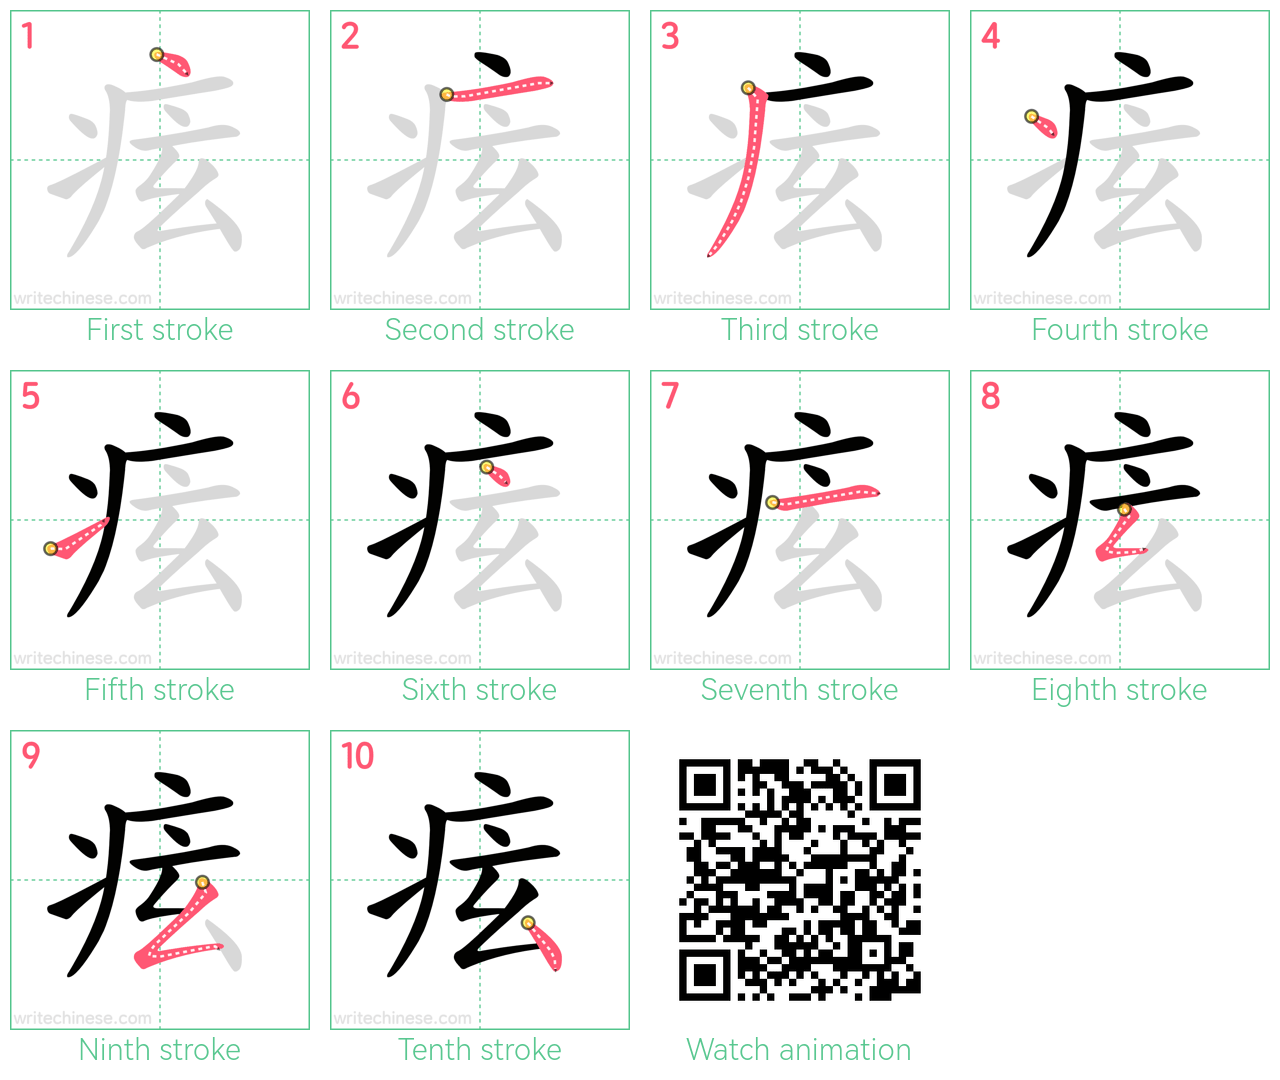 痃 step-by-step stroke order diagrams